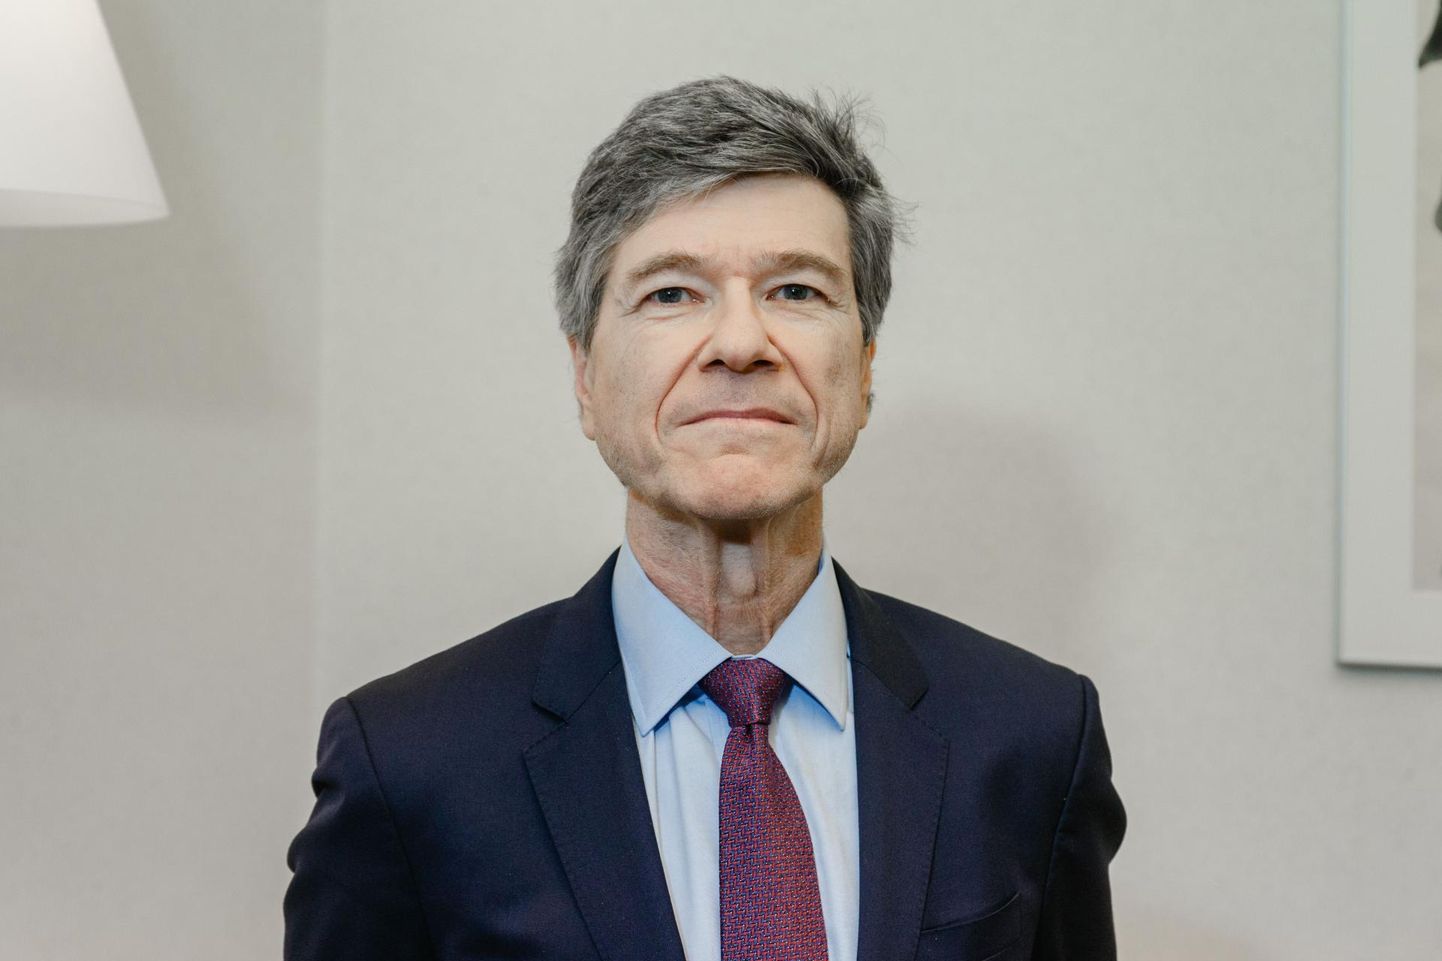 Maailma üks tuntumaid majandusteadlasi ja Eesti krooni üks loojaid Jeffrey Sachs viibis sel nädalal Tallinnas ja esines Eesti Panga juubeli puhul loenguga.